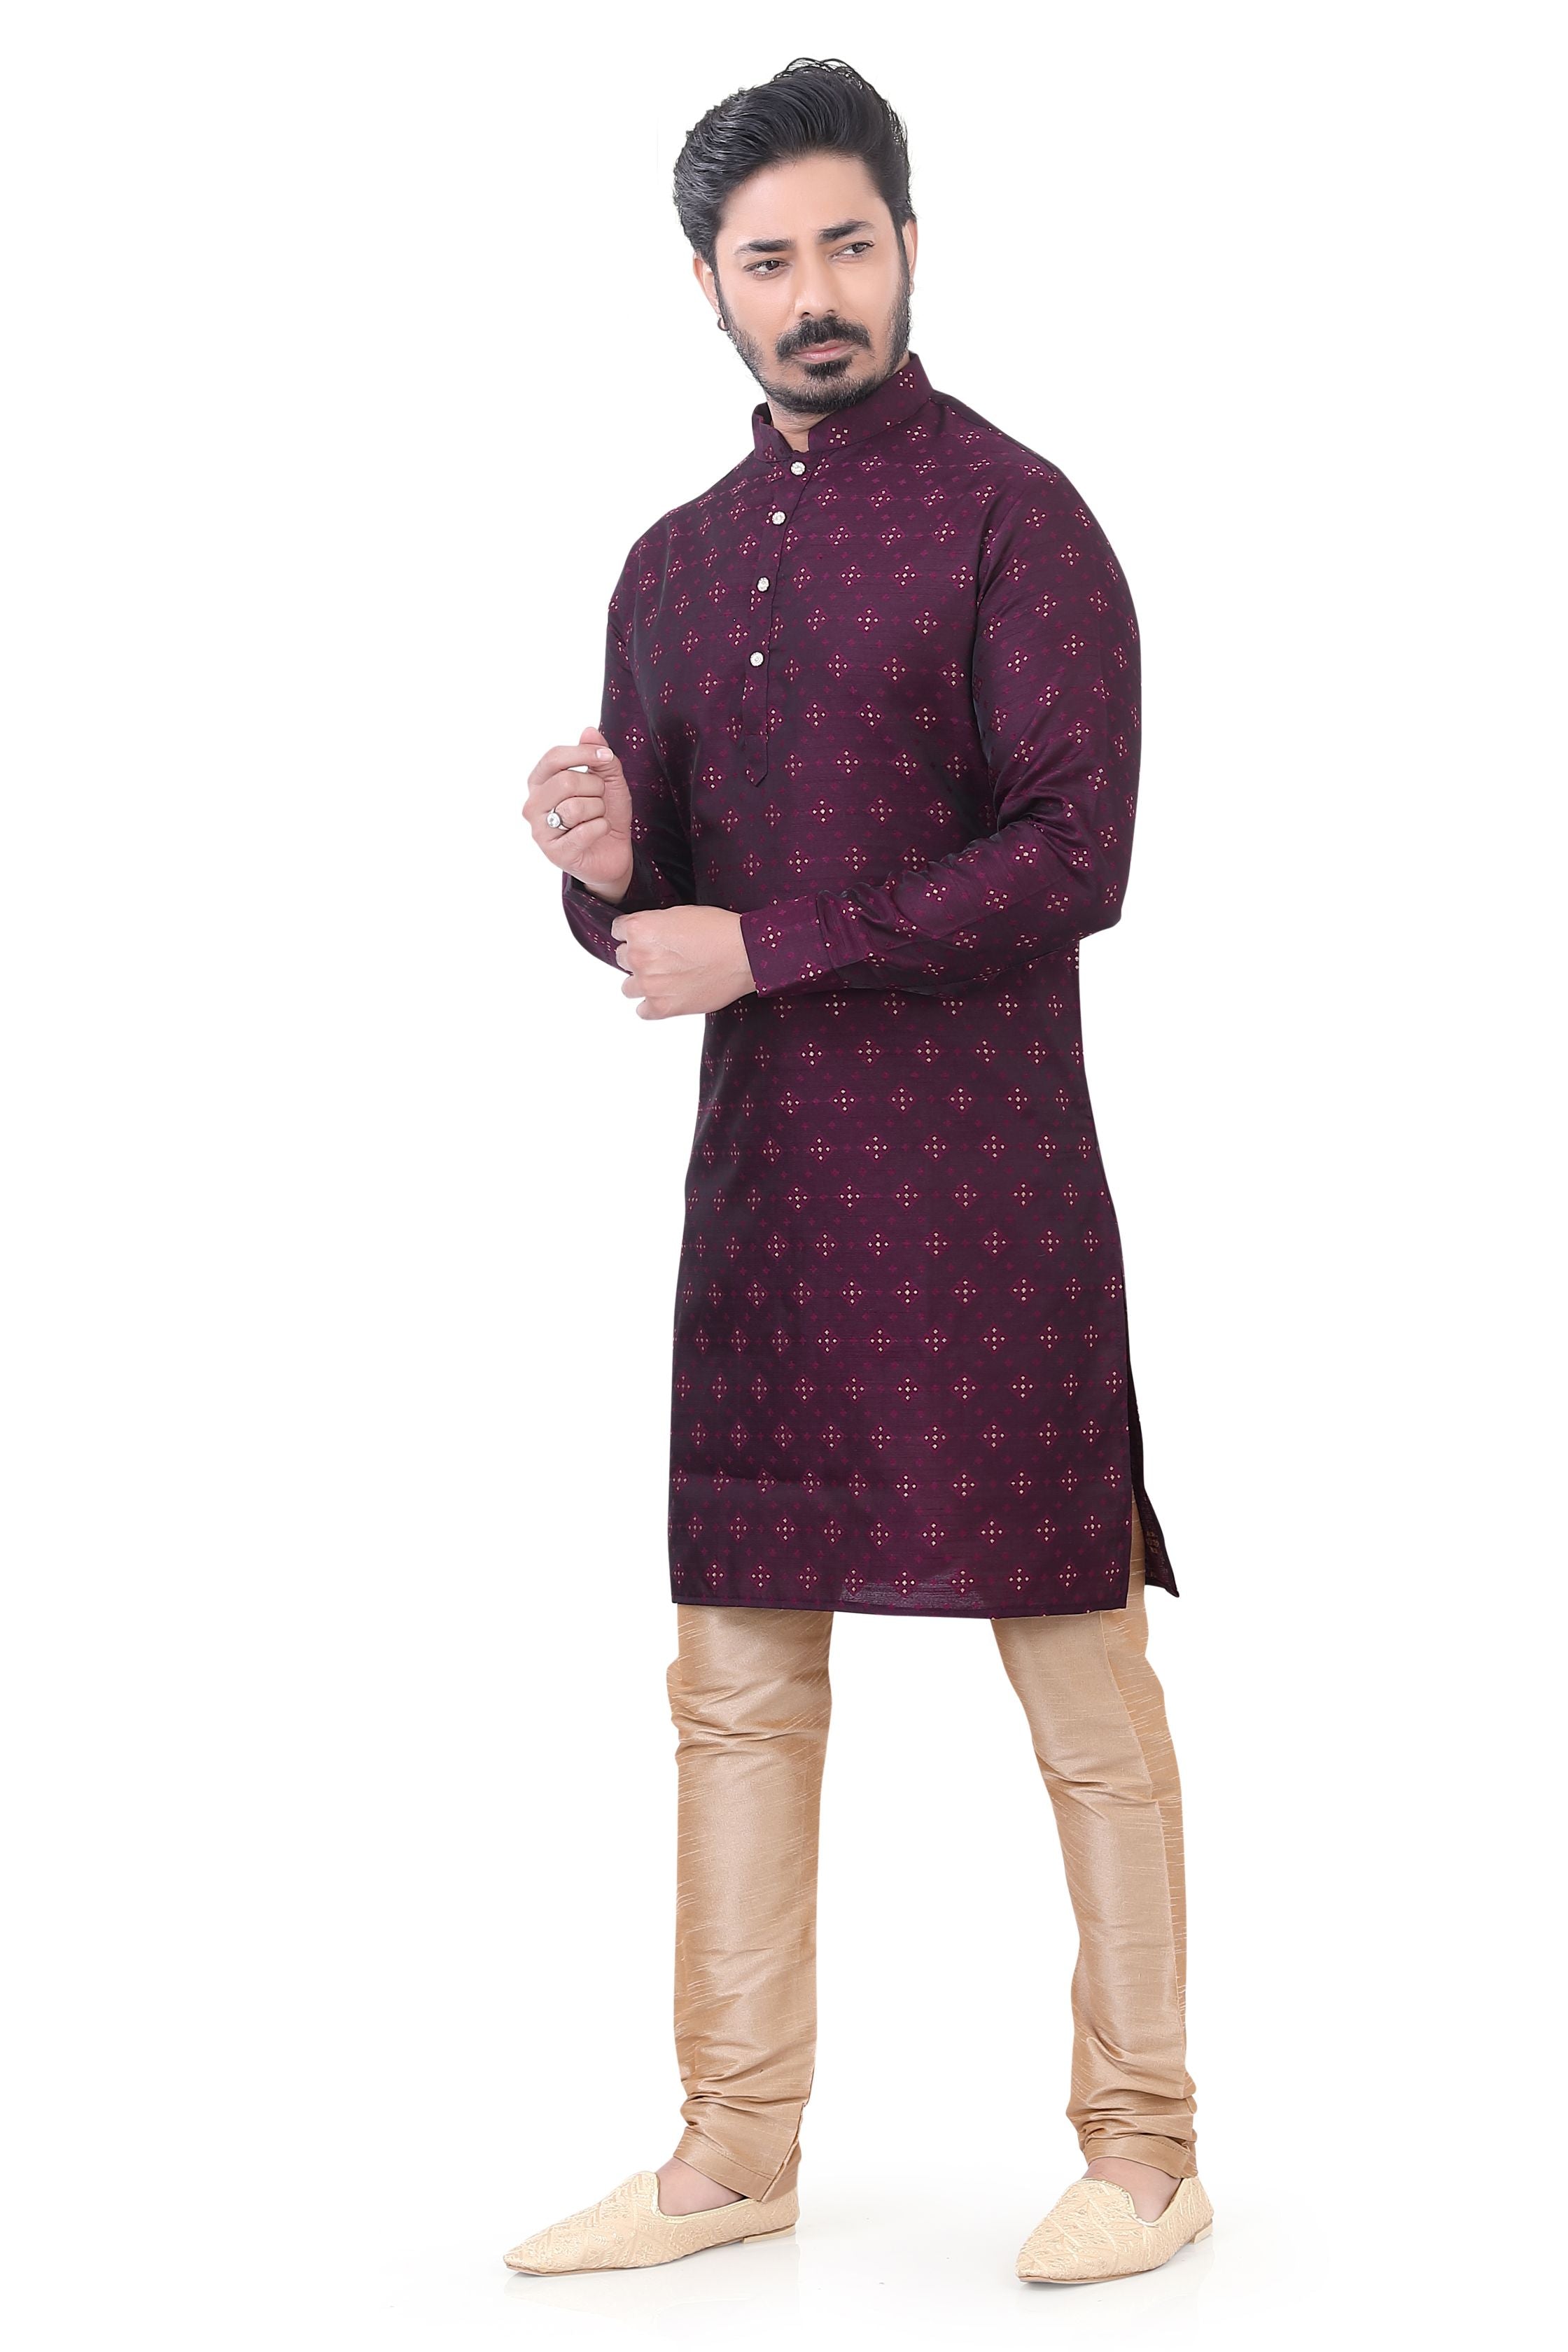 Banarasi Silk self toned Kurta Pajama in Wine color.